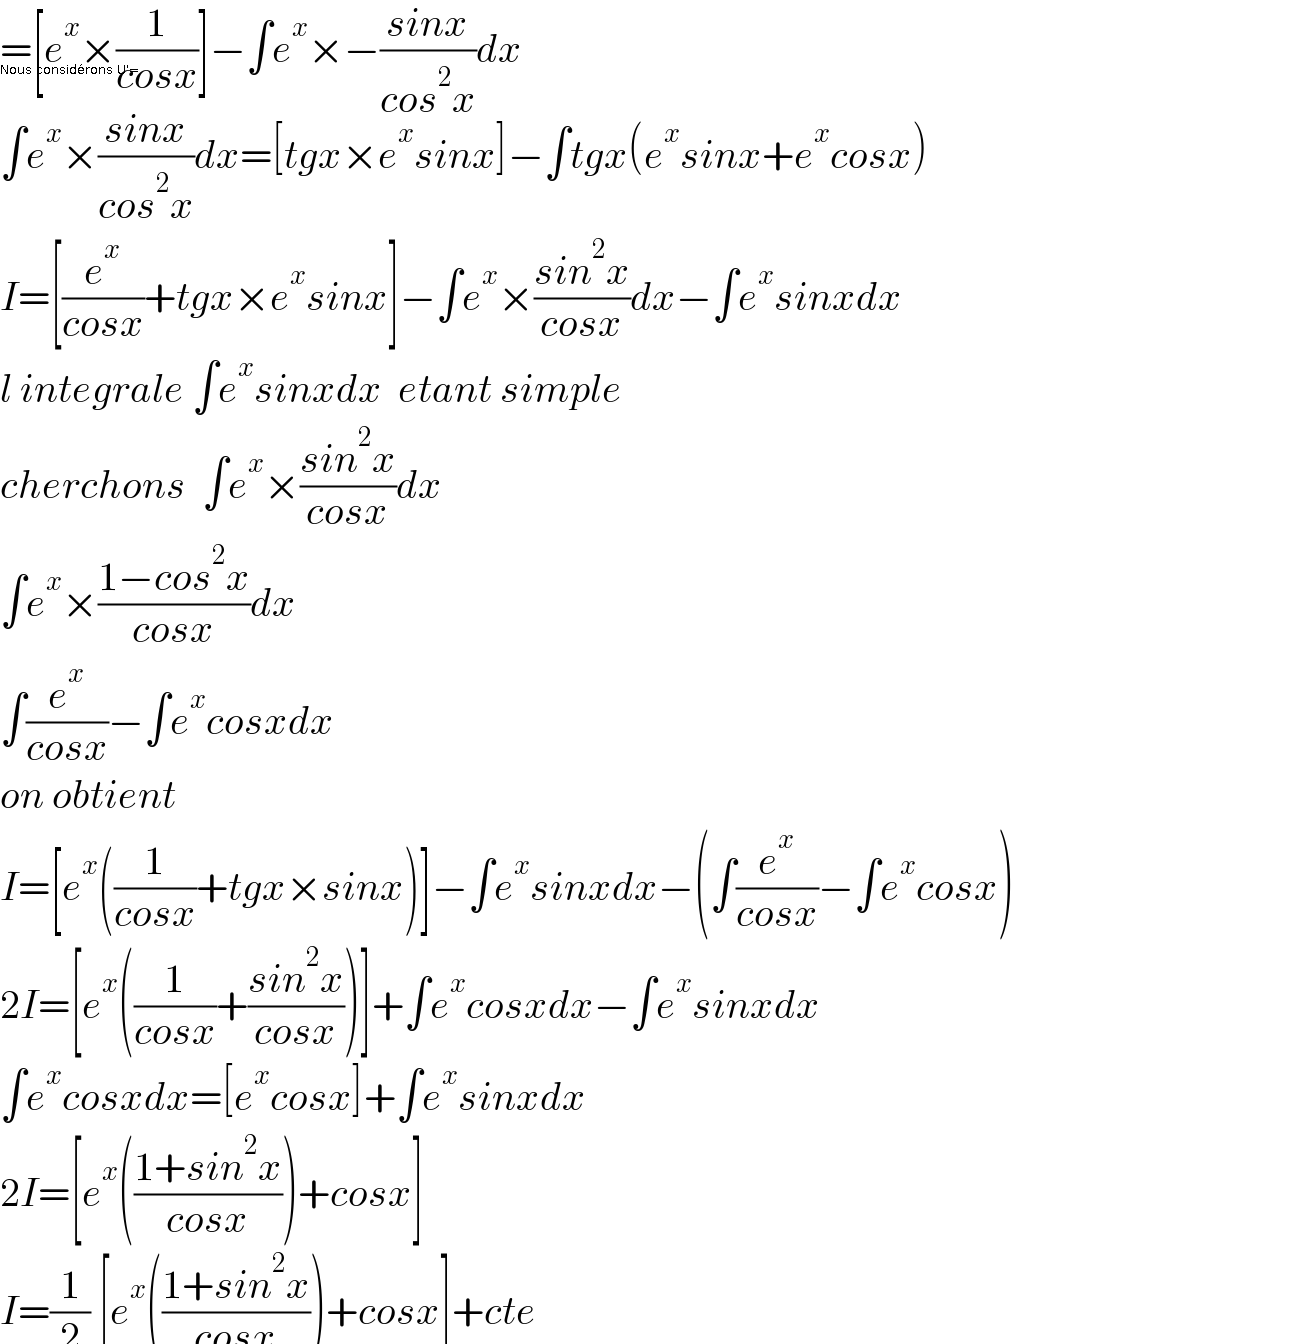 =[e^x ×(1/(cosx))]−∫e^x ×−((sinx)/(cos^2 x))dx  Nous considérons U'=  ∫e^x ×((sinx)/(cos^2 x))dx=[tgx×e^x sinx]−∫tgx(e^x sinx+e^x cosx)  I=[(e^x /(cosx))+tgx×e^x sinx]−∫e^x ×((sin^2 x)/(cosx))dx−∫e^x sinxdx  l integrale ∫e^x sinxdx  etant simple  cherchons  ∫e^x ×((sin^2 x)/(cosx))dx  ∫e^x ×((1−cos^2 x)/(cosx))dx  ∫(e^x /(cosx))−∫e^x cosxdx  on obtient  I=[e^x ((1/(cosx))+tgx×sinx)]−∫e^x sinxdx−(∫(e^x /(cosx))−∫e^x cosx)  2I=[e^x ((1/(cosx))+((sin^2 x)/(cosx)))]+∫e^x cosxdx−∫e^x sinxdx  ∫e^x cosxdx=[e^x cosx]+∫e^x sinxdx  2I=[e^x (((1+sin^2 x)/(cosx)))+cosx]  I=(1/2) [e^x (((1+sin^2 x)/(cosx)))+cosx]+cte    